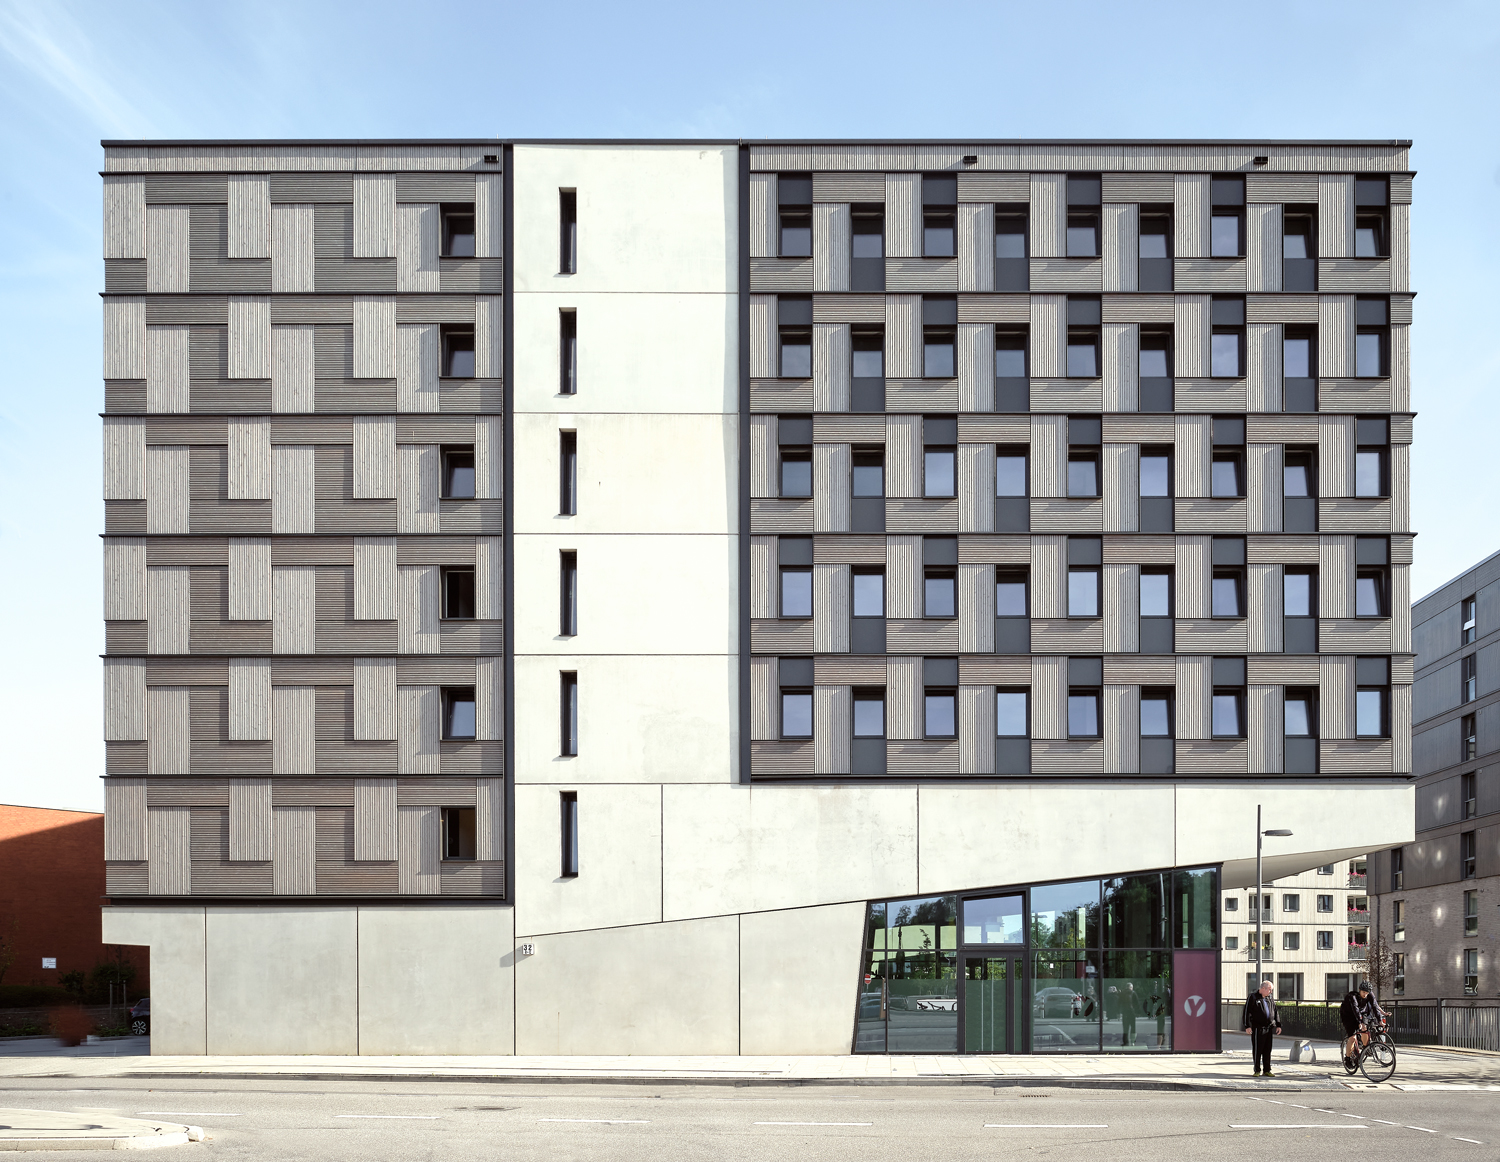 Aloys Kiefer Architekturfotografie: Querformat der ganzen Fassade von Sonne beschienen. Die Fassade weist drei Elemente auf. Den Betonsockel mit der keilförmig auskragendem Stütze nach rechts.